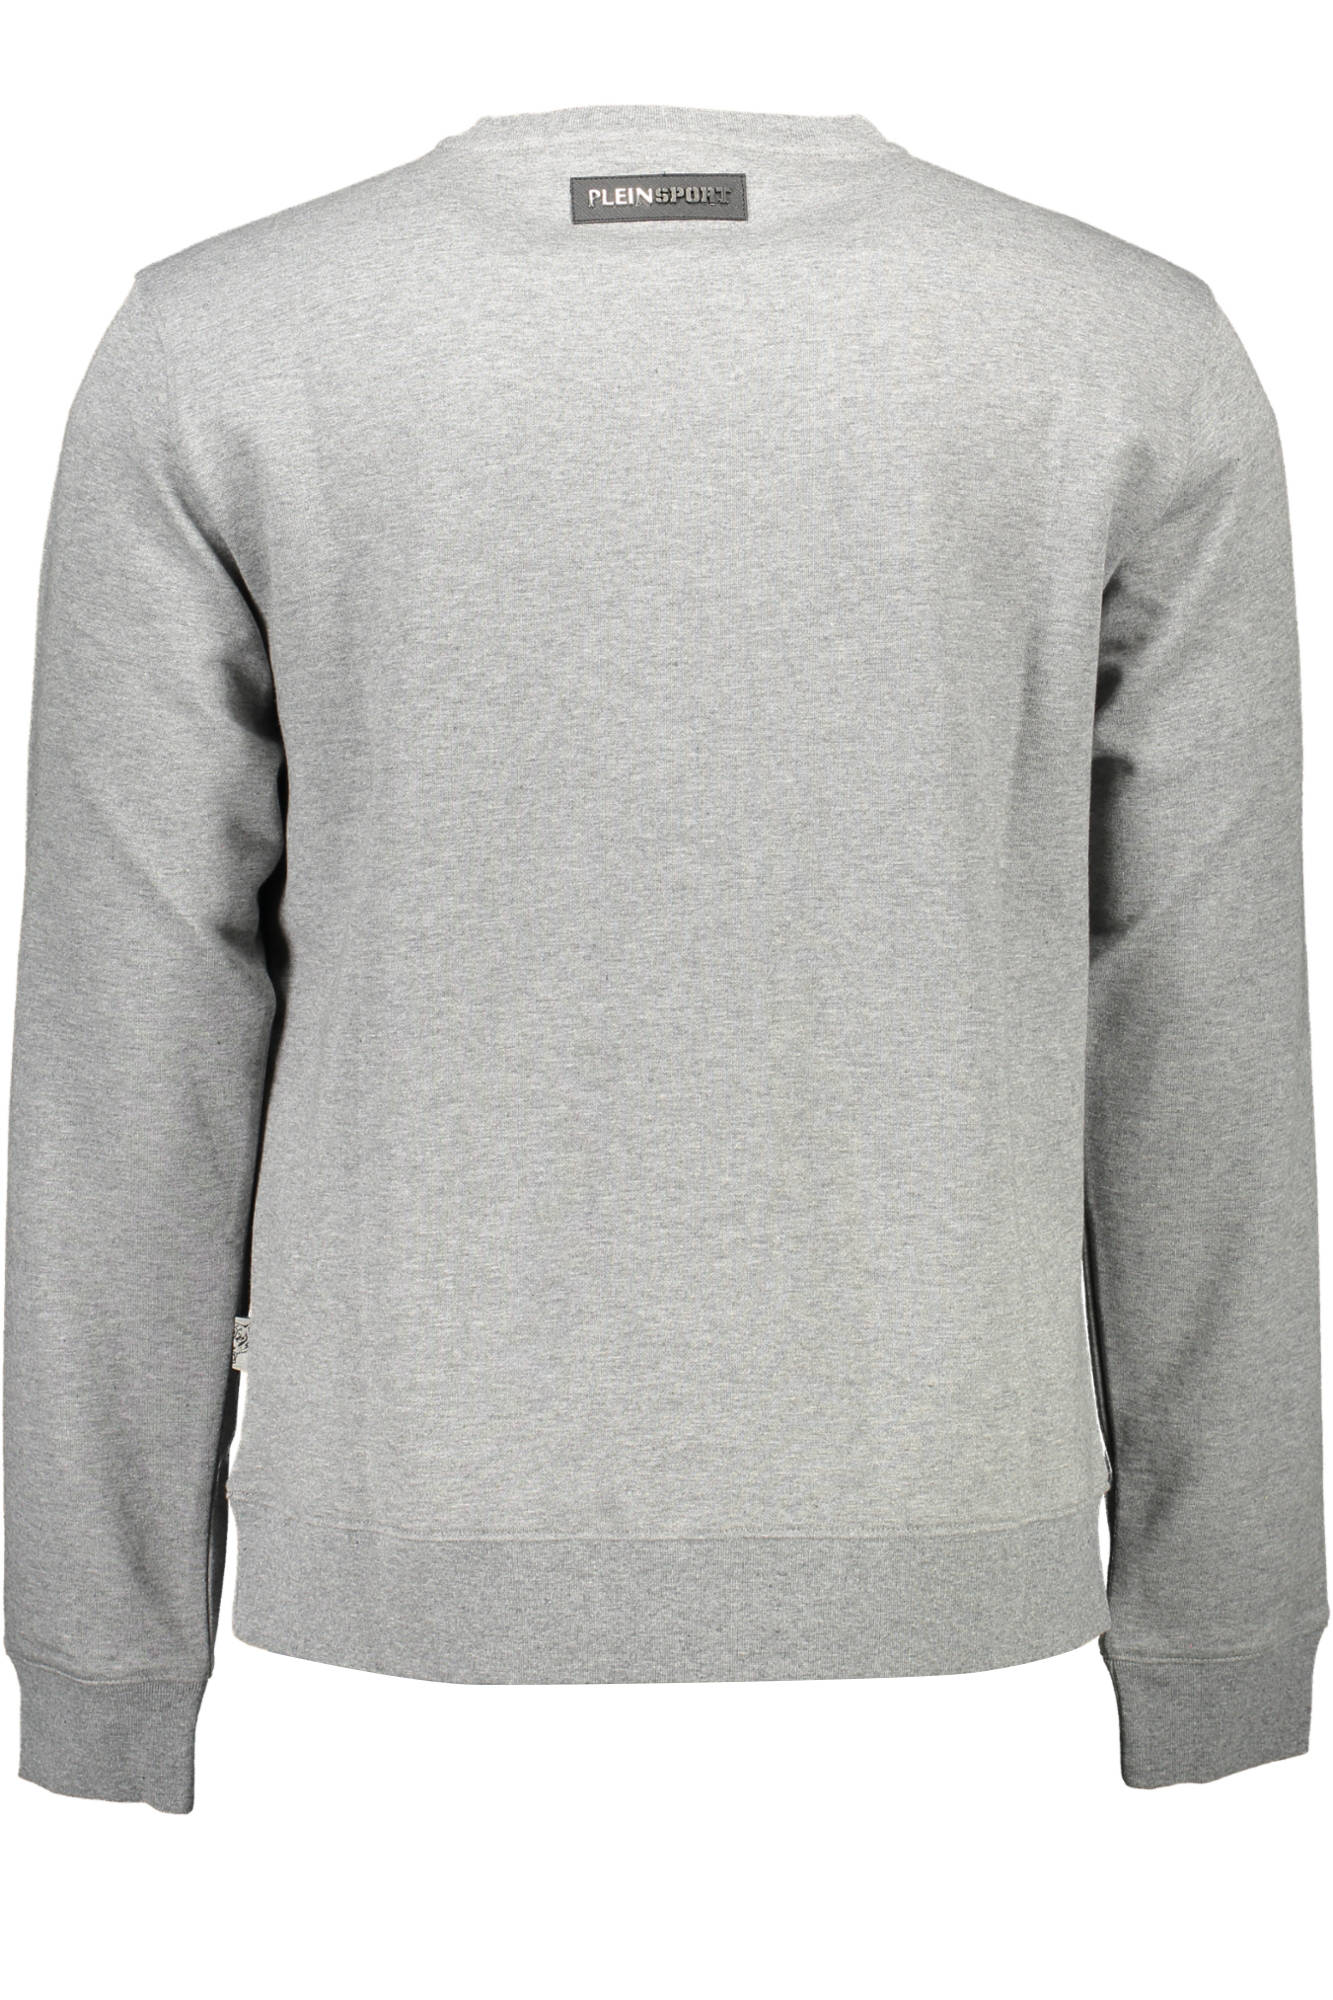 Plein Sport Gray Sweater - Fizigo